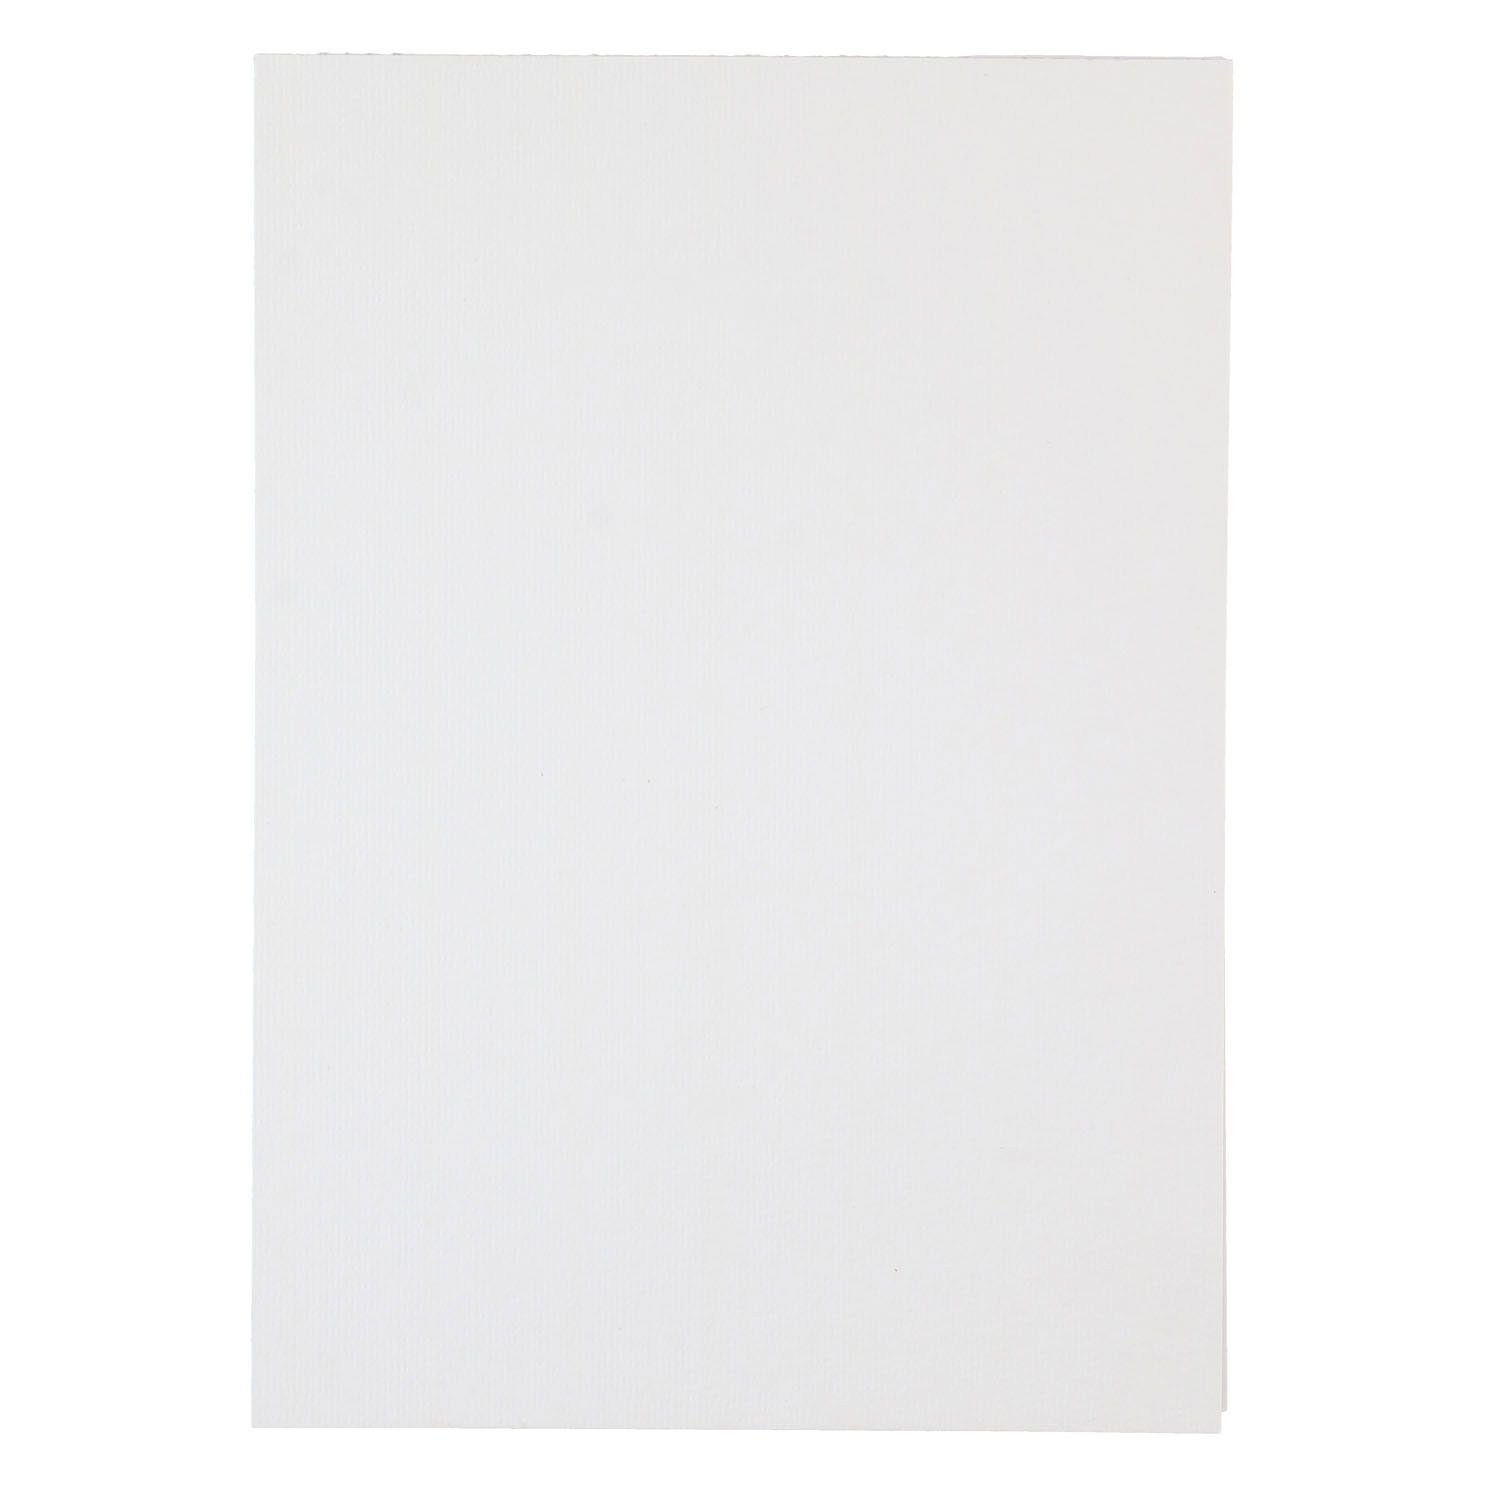 Aquarellpapier weiß, 20 Blatt